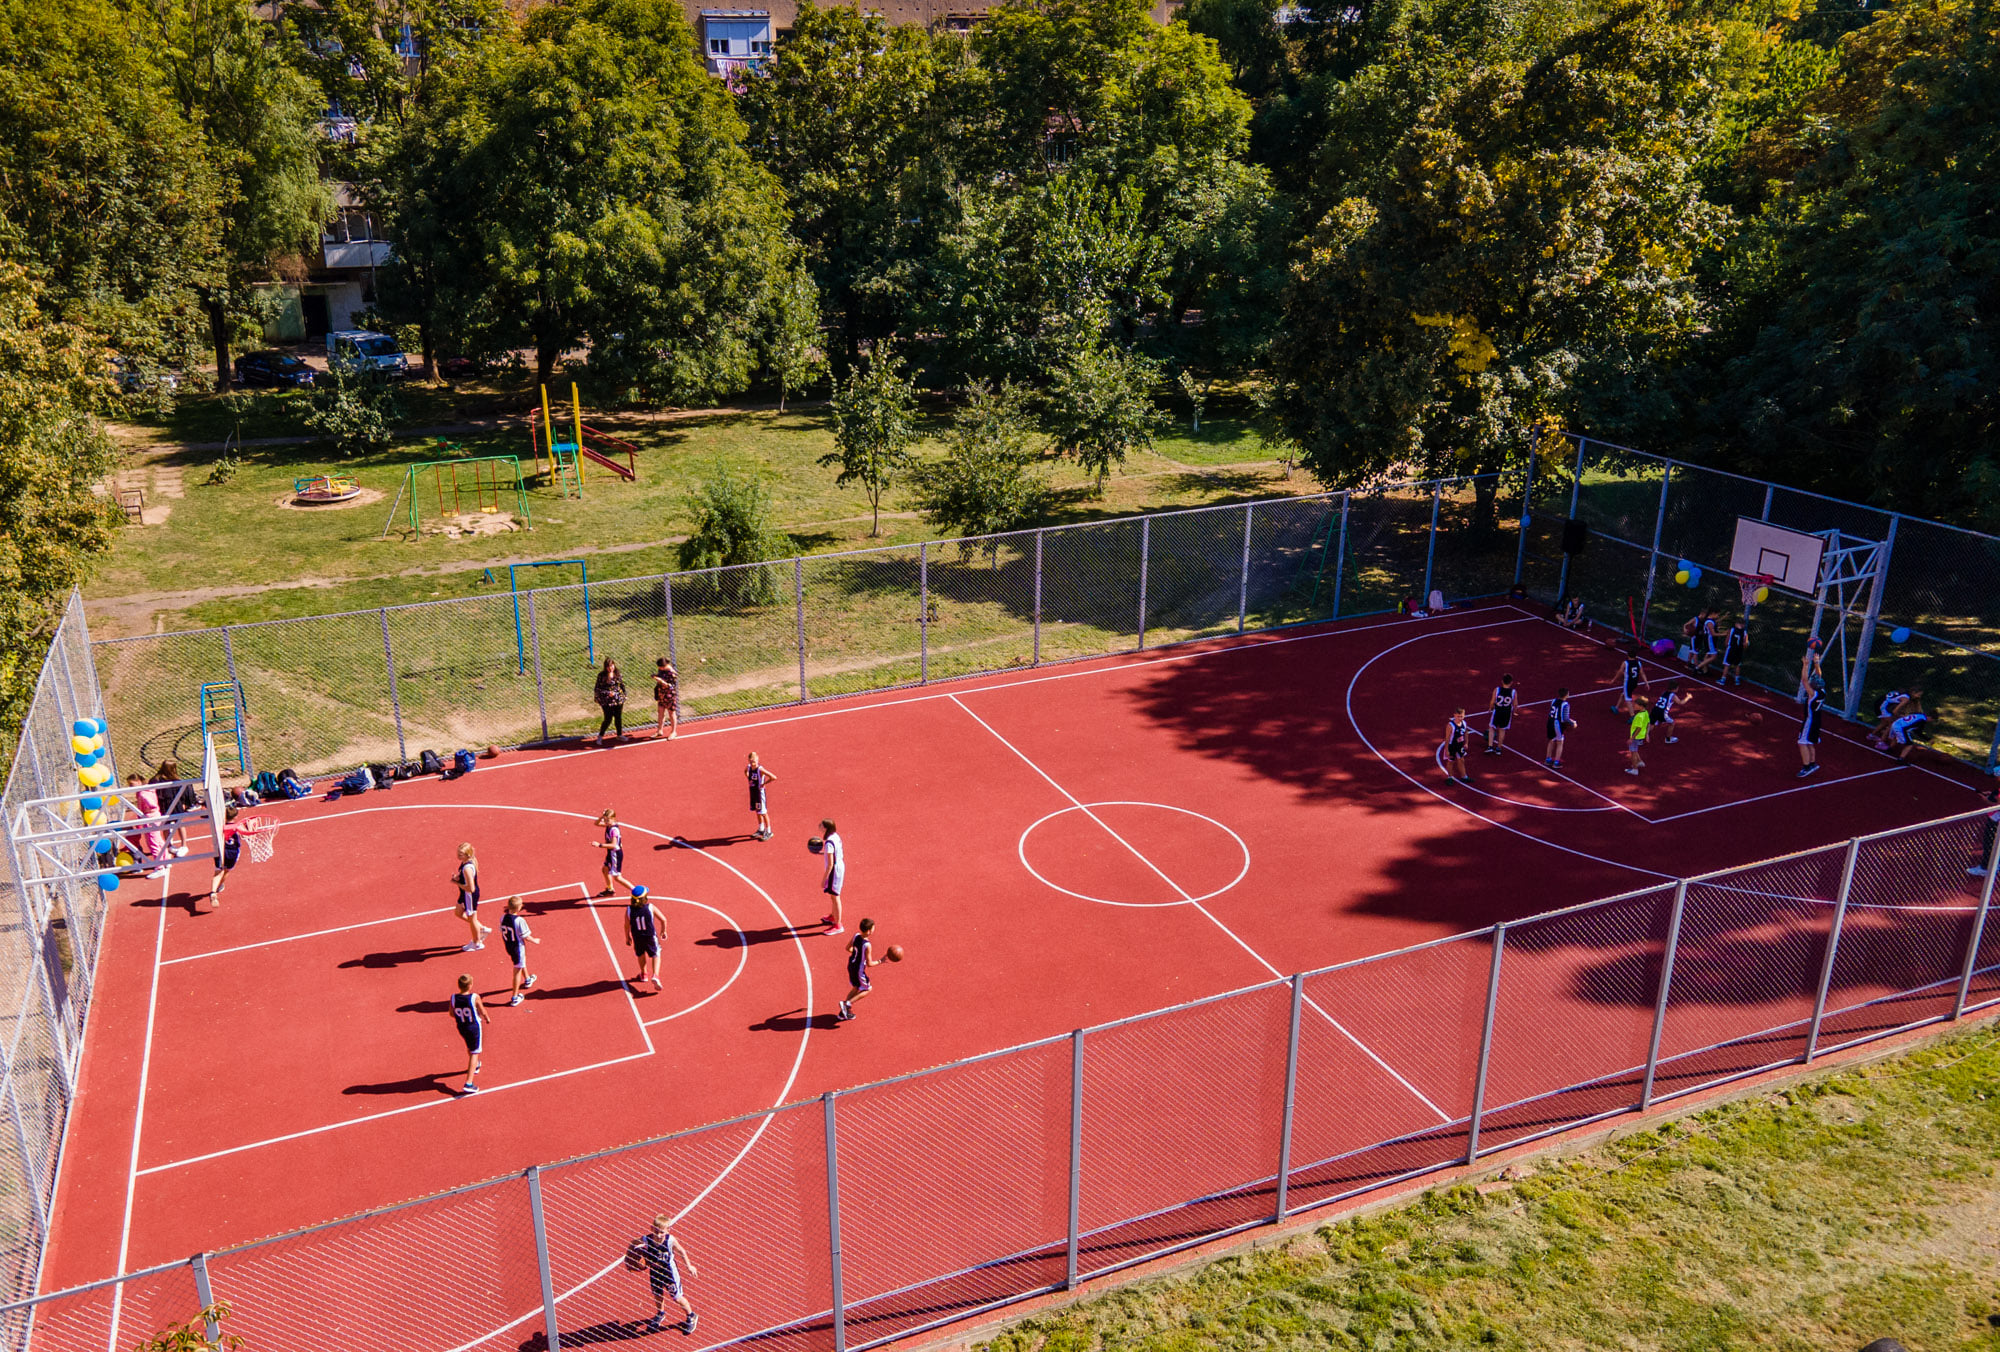 Ще один баскетбольний майданчик у рамках Бюджету громадської ініціативи відкрили в Ужгороді (ФОТО)